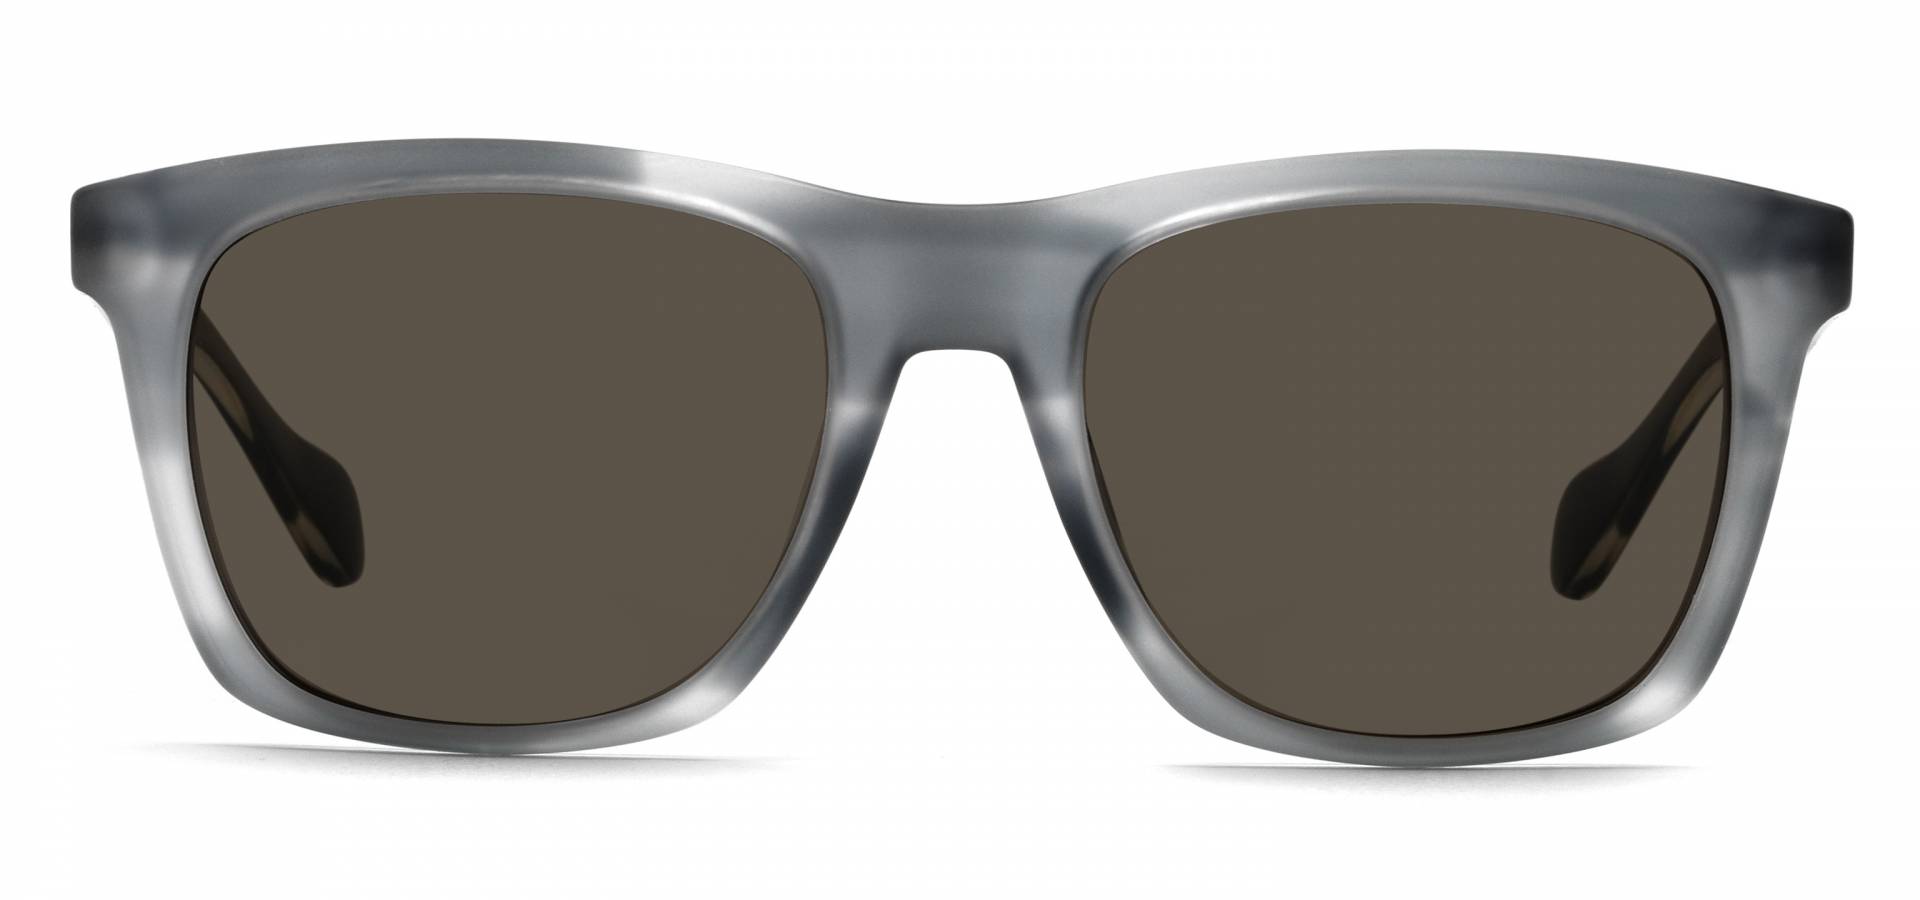 Sunčane naočale Hugo Boss BOSS 0911/S: Boja: Striped Grey Brown, Veličina: 53/19/145, Spol: muške, Materijal: acetat, Vrsta leće: polarizirane